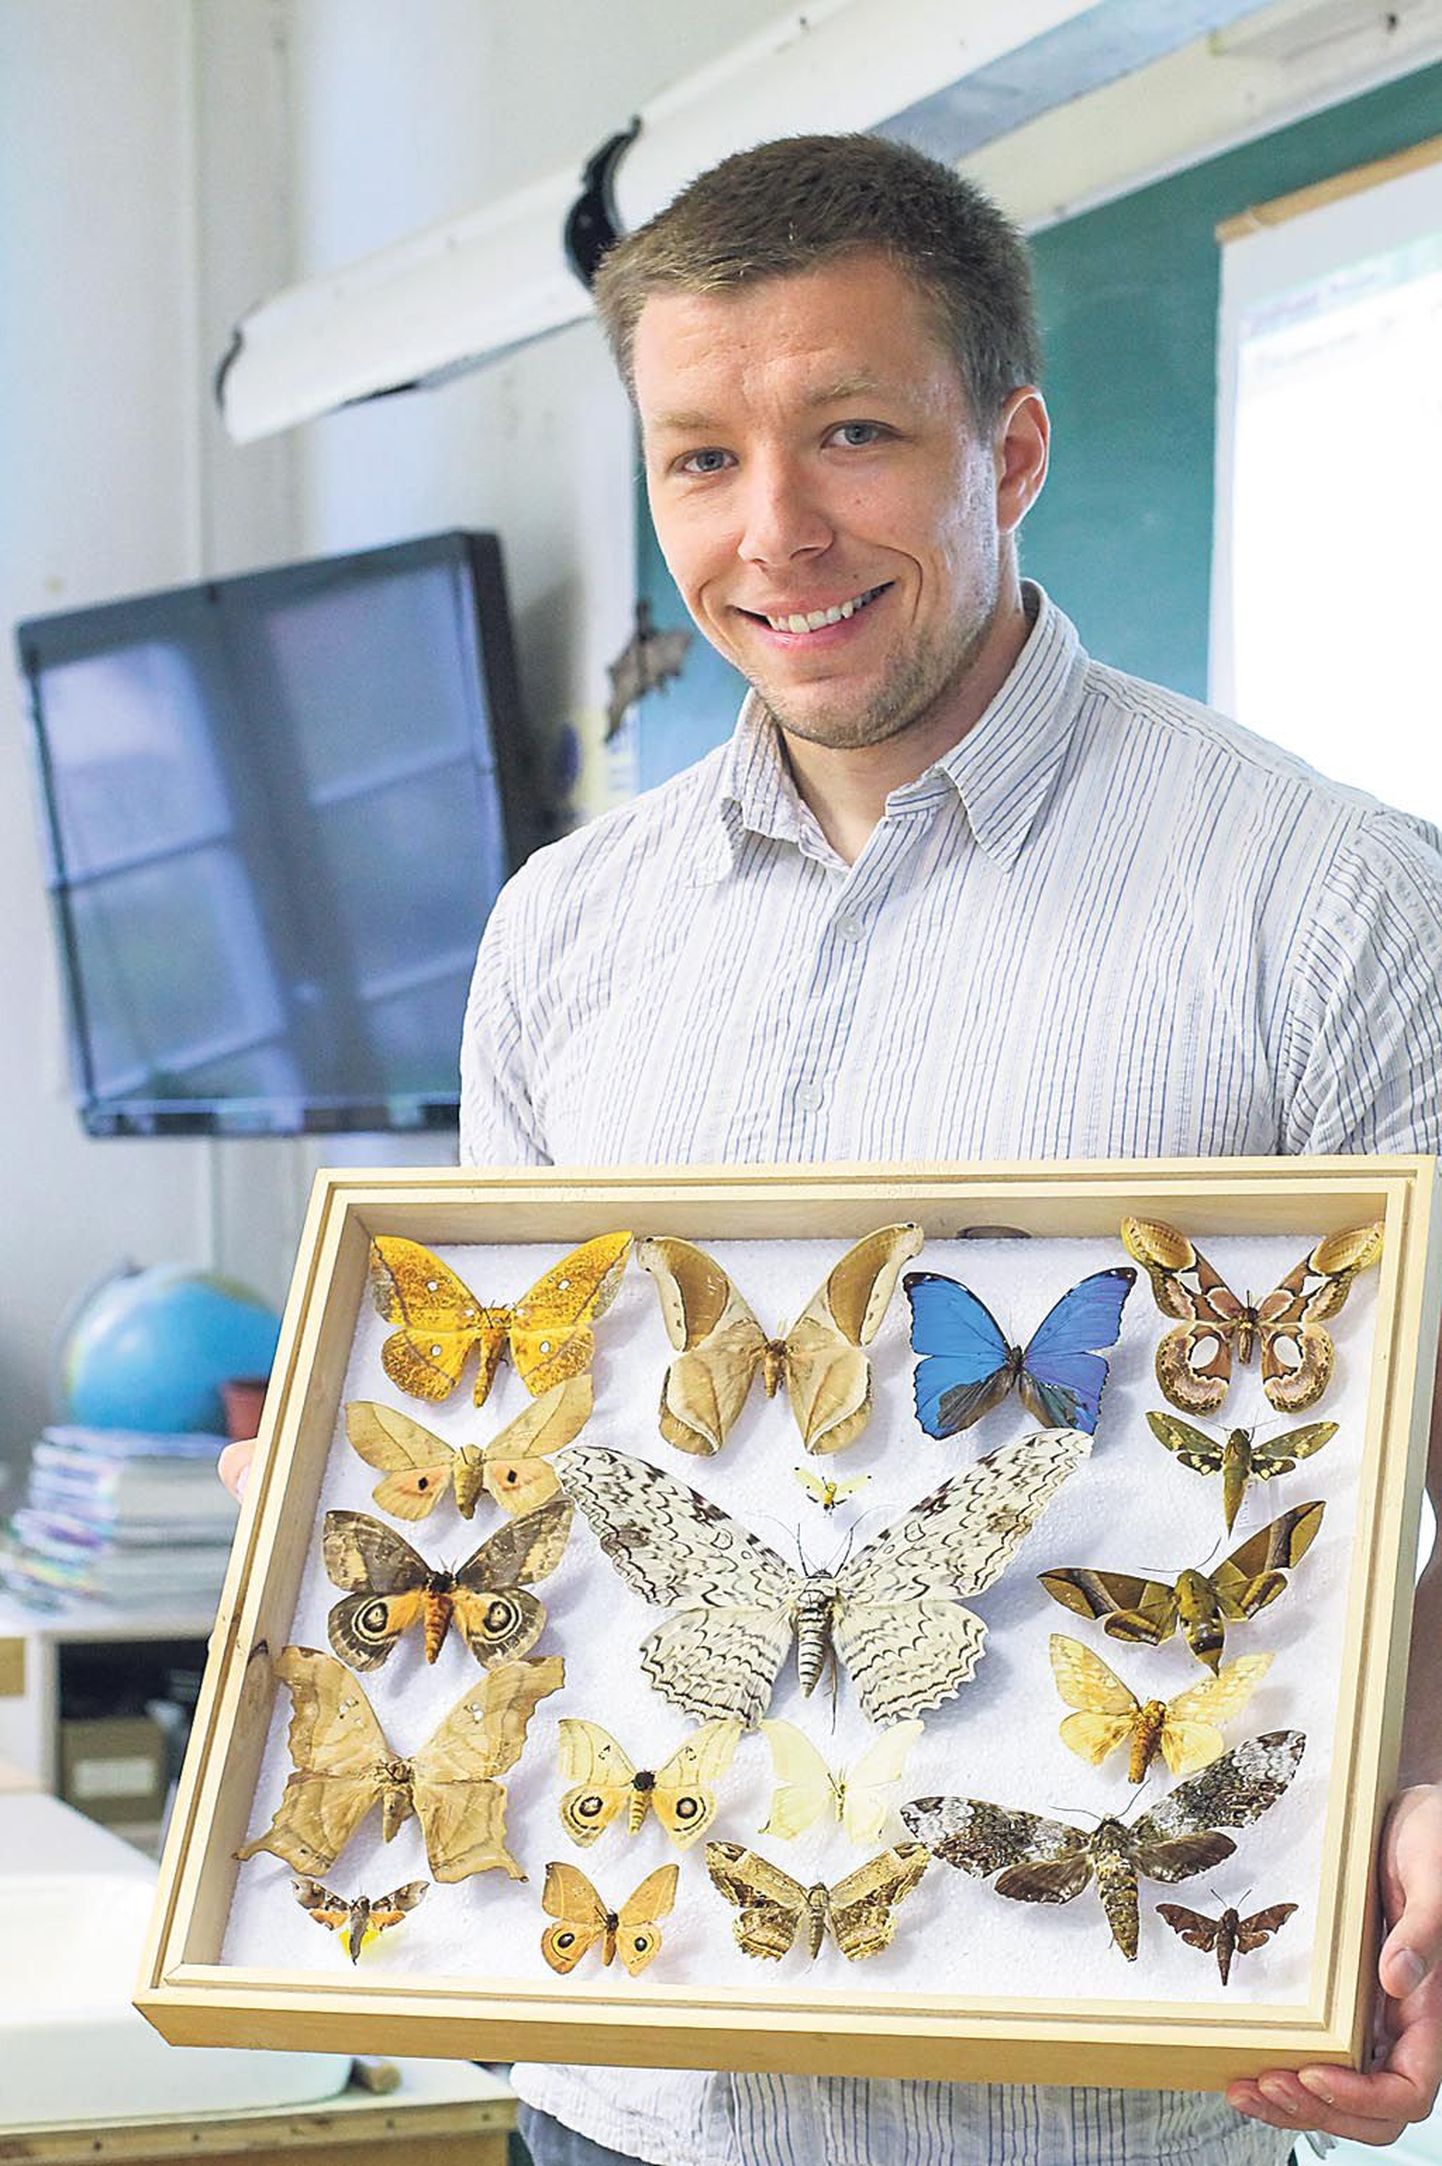 Elava raamatukogu “raamat” teadlane Sergei Põlme kirjeldas õpilastele Brasiilia vihmametsasid, kus ta on töötanud, ja näitas Prantsuse Guajaanas püütud liblikaid.